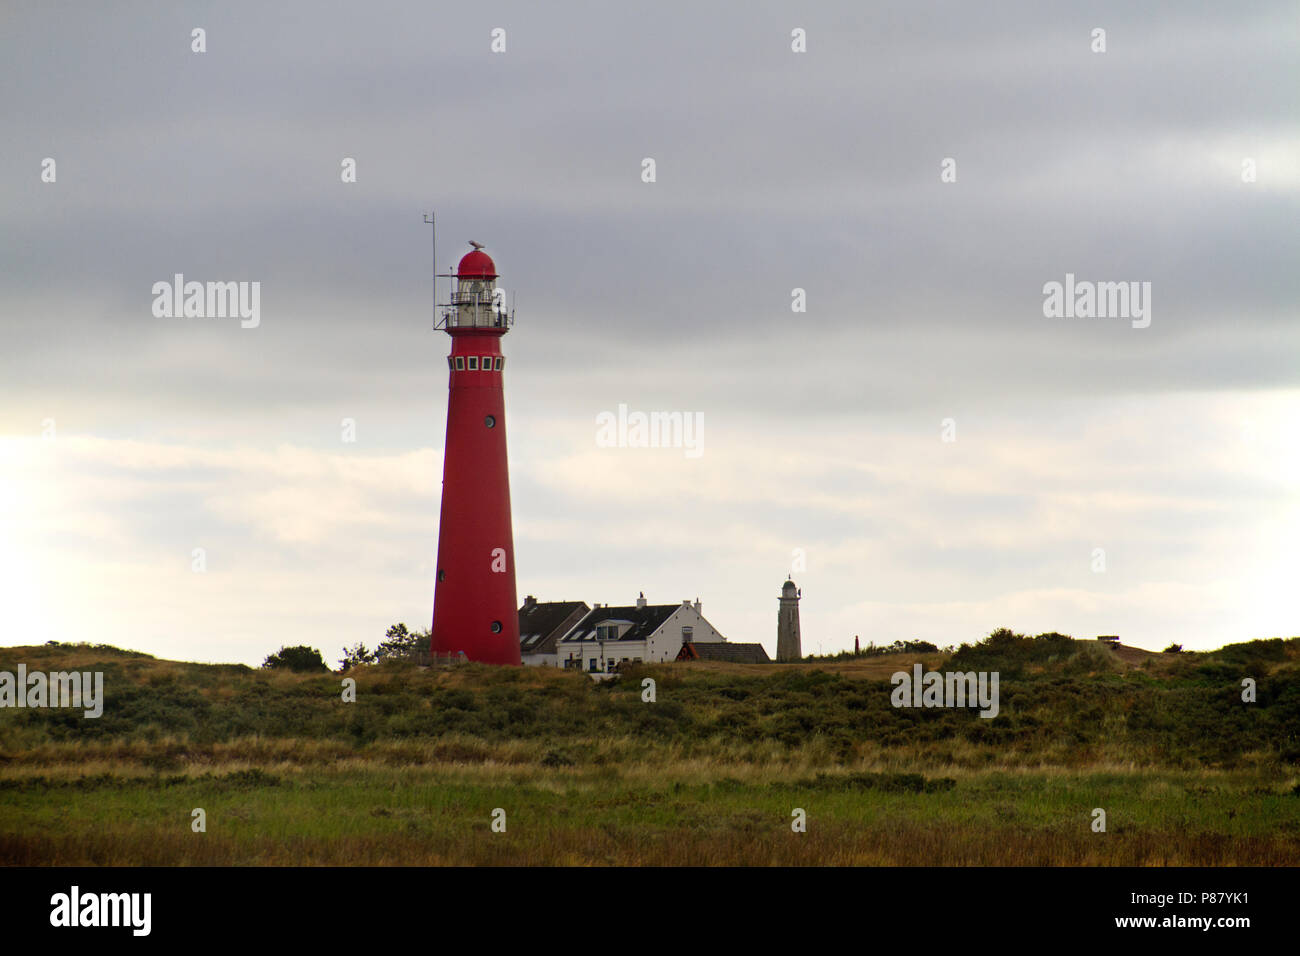 Faro rosso nelle dune dell'isola olandese Schiermonnikoog, accanto ad essa la casa bianca del detentore, a distanza di un secondo faro Foto Stock